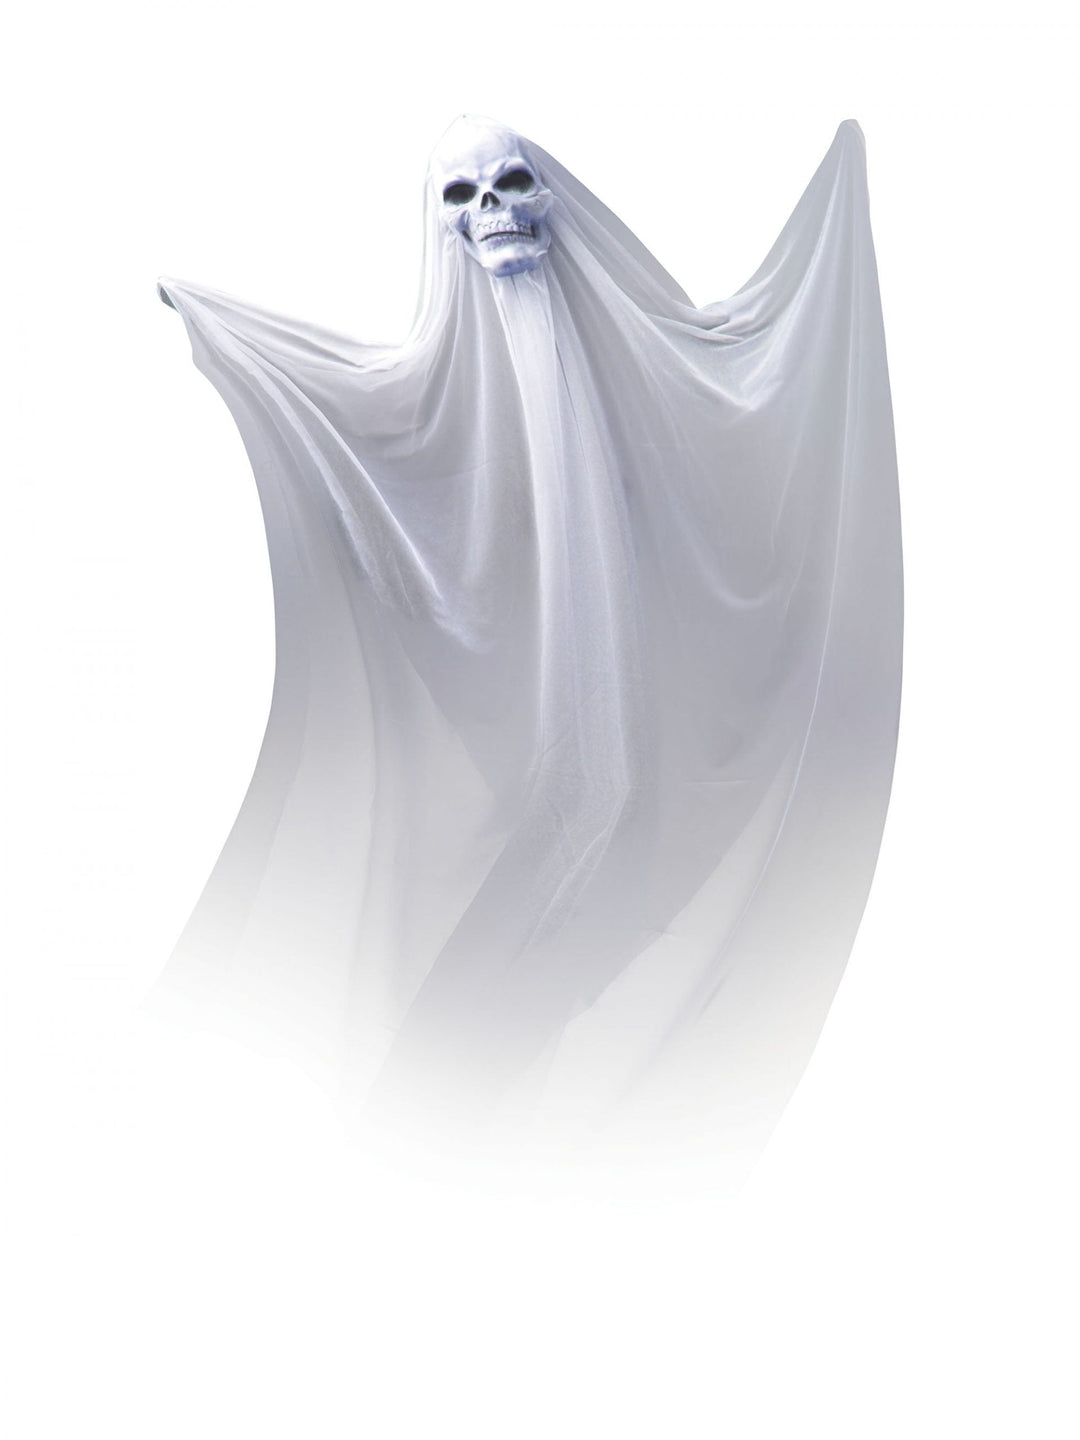 Hanging Ghost Prop Halloween Items Unisex_1